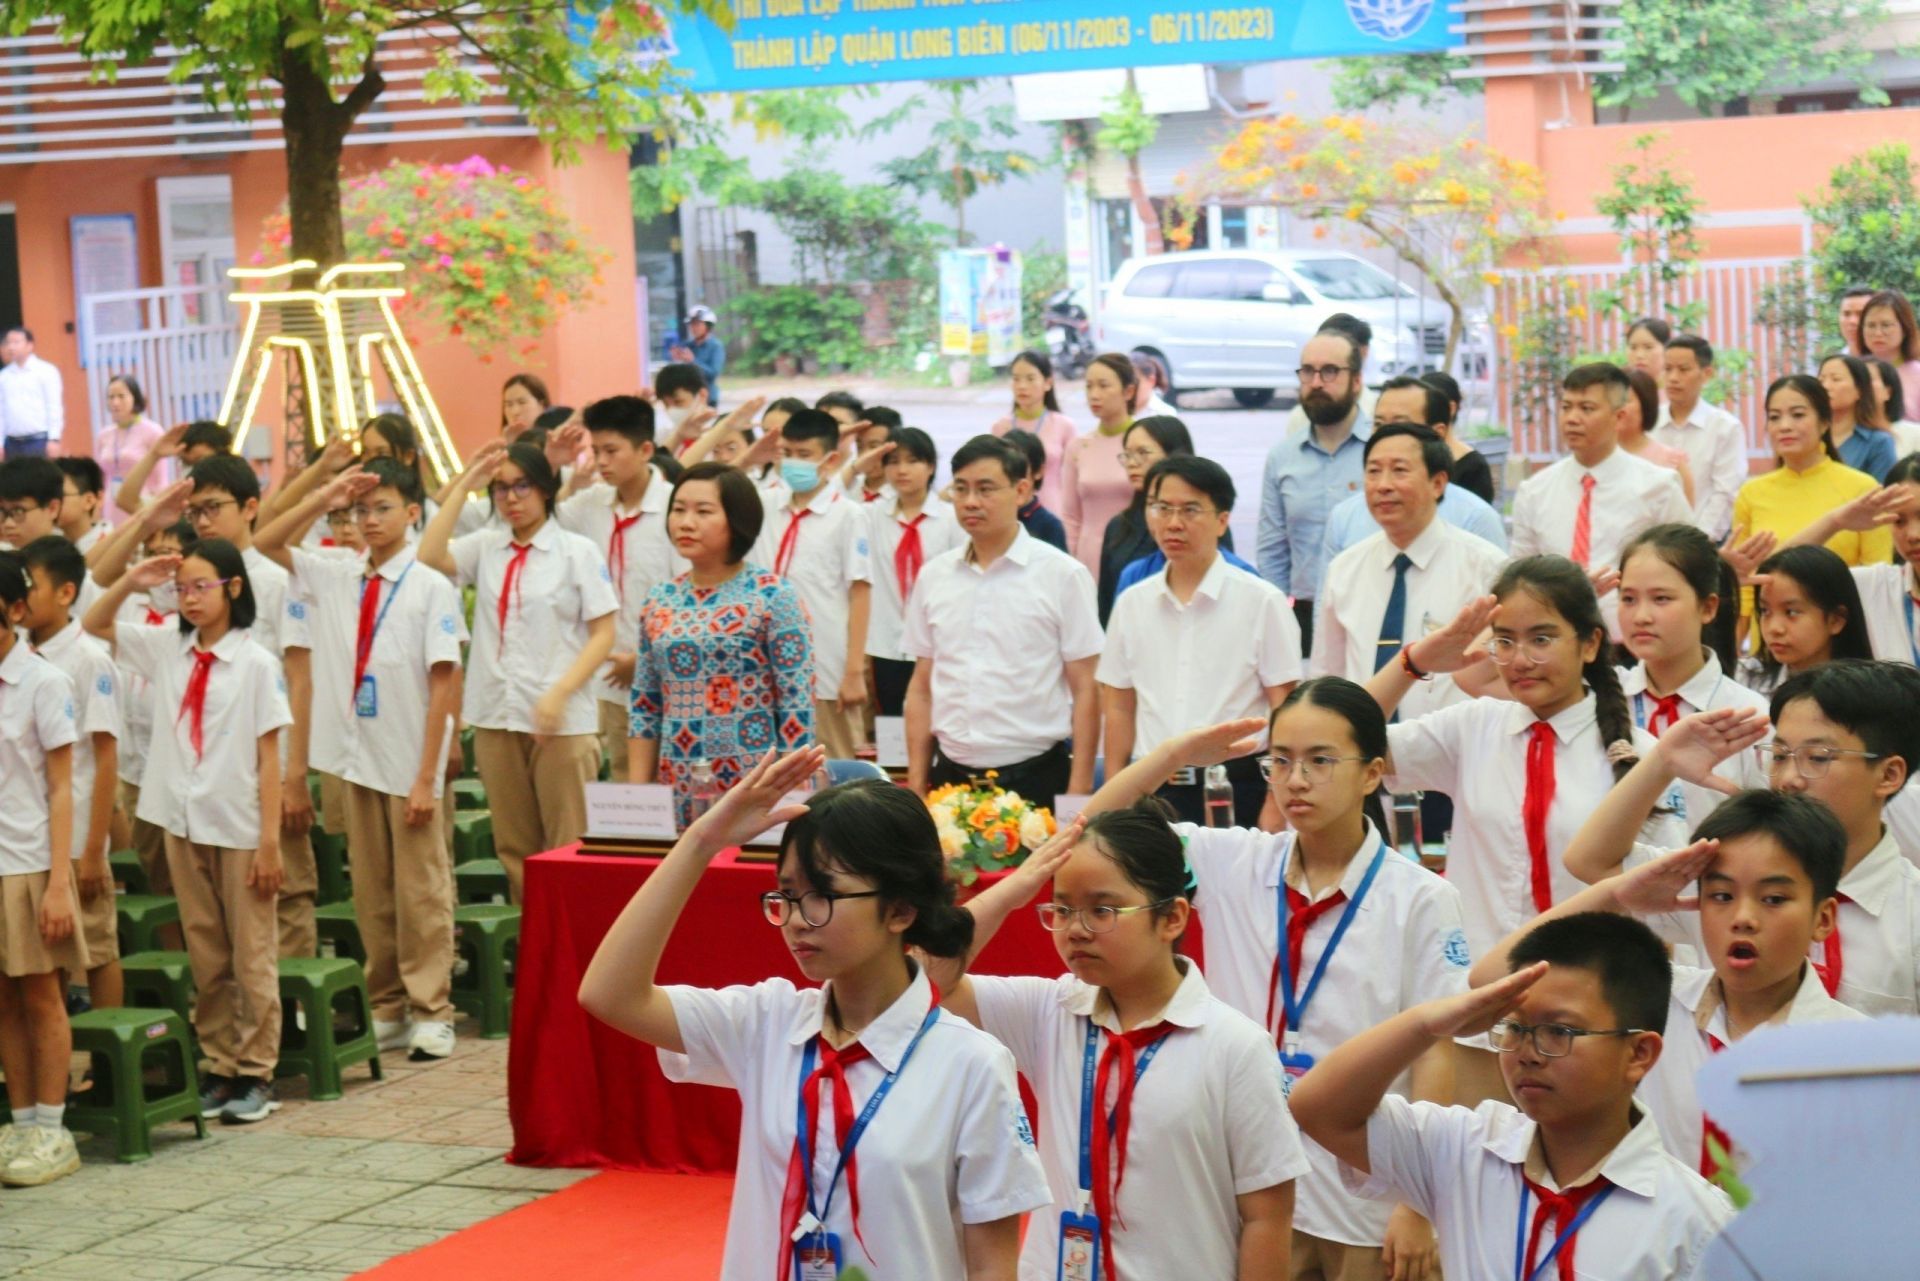 Lễ Bế giảng năm học 2023 – 2024 của trường THCS Chu Văn An được diễn ra trong không khí trang trọng, ấm áp.